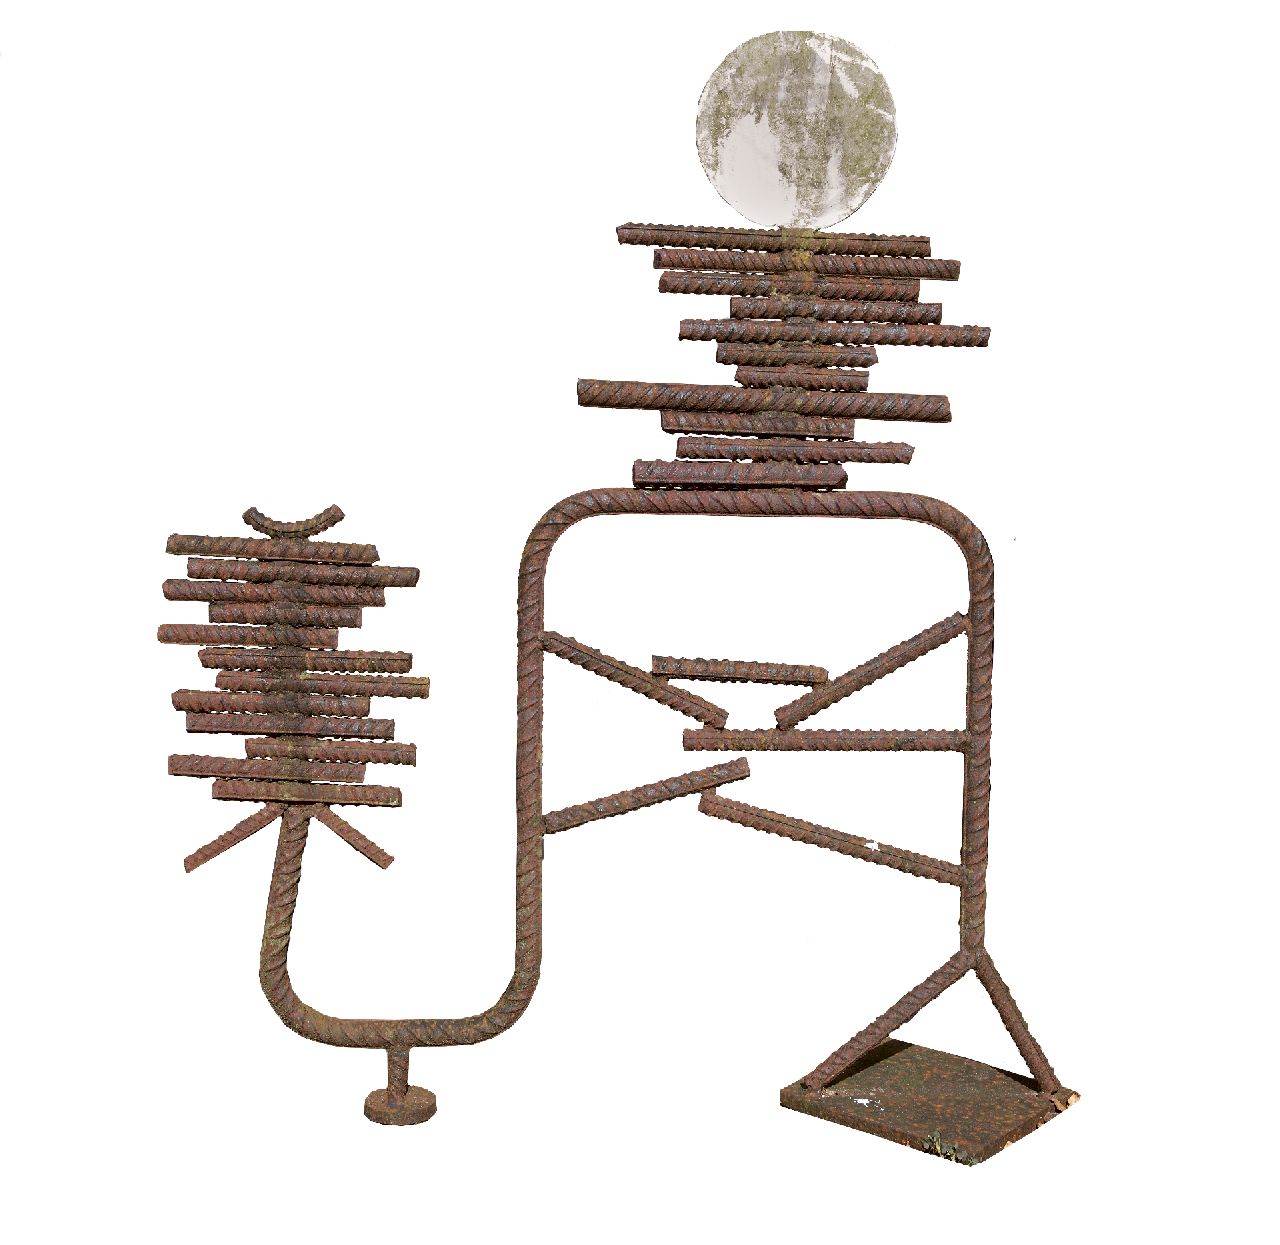 Niermeijer Th.  | Theo Niermeijer | Beelden en objecten te koop aangeboden | Compositie, geoxideerd staal 131,5 x 110,0 cm